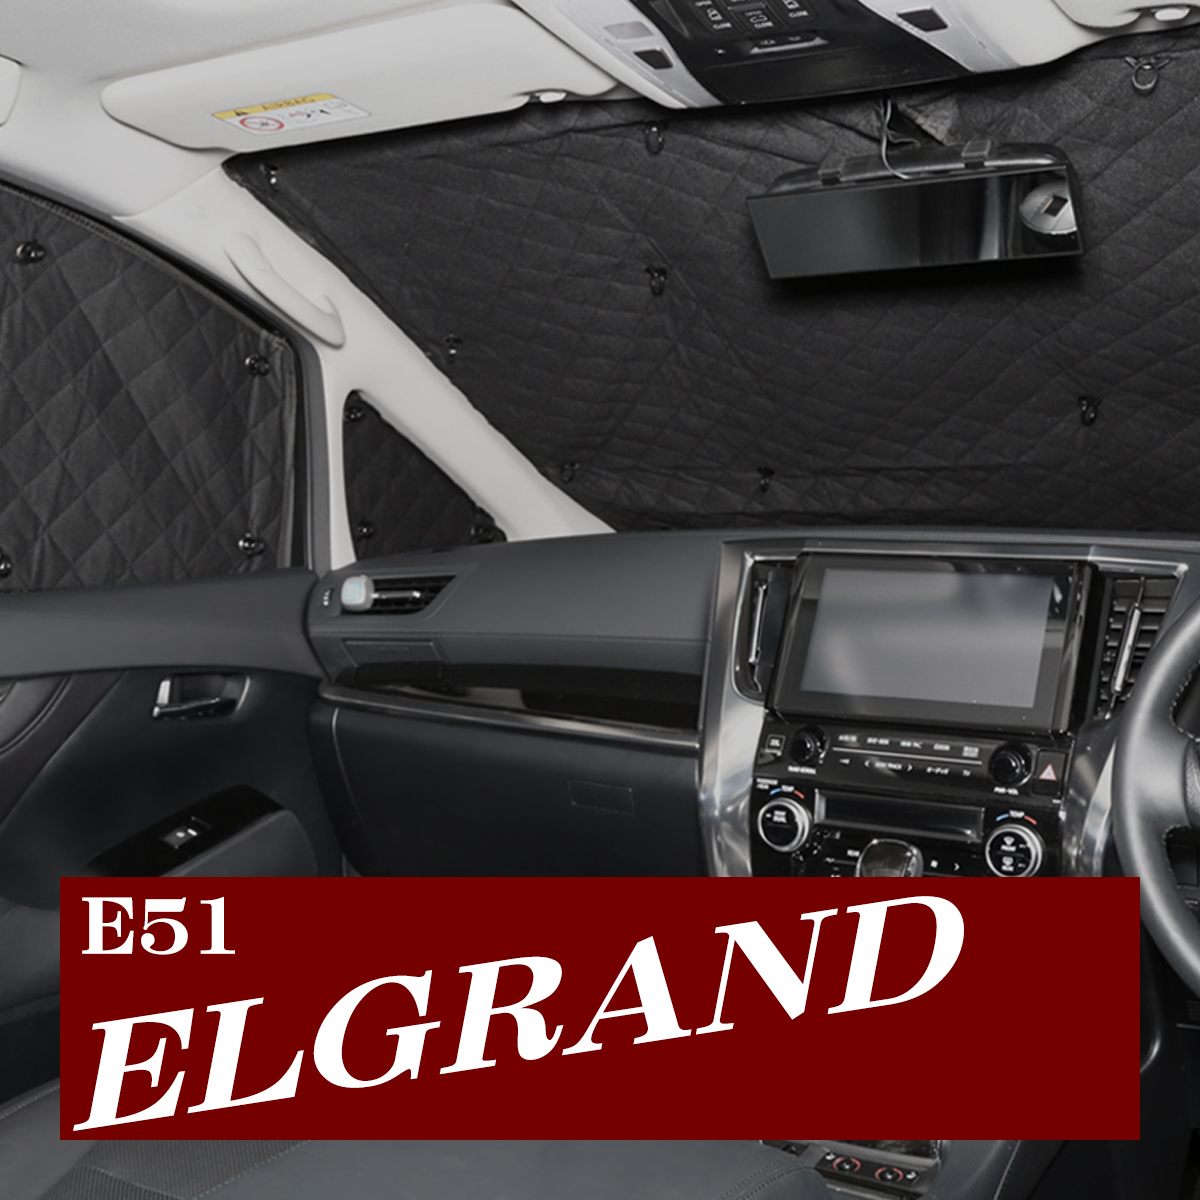 E51 エルグランド サンシェード 全窓用 5層構造 ブラックメッシュ 車中泊 アウトドア 日よけ SZ635